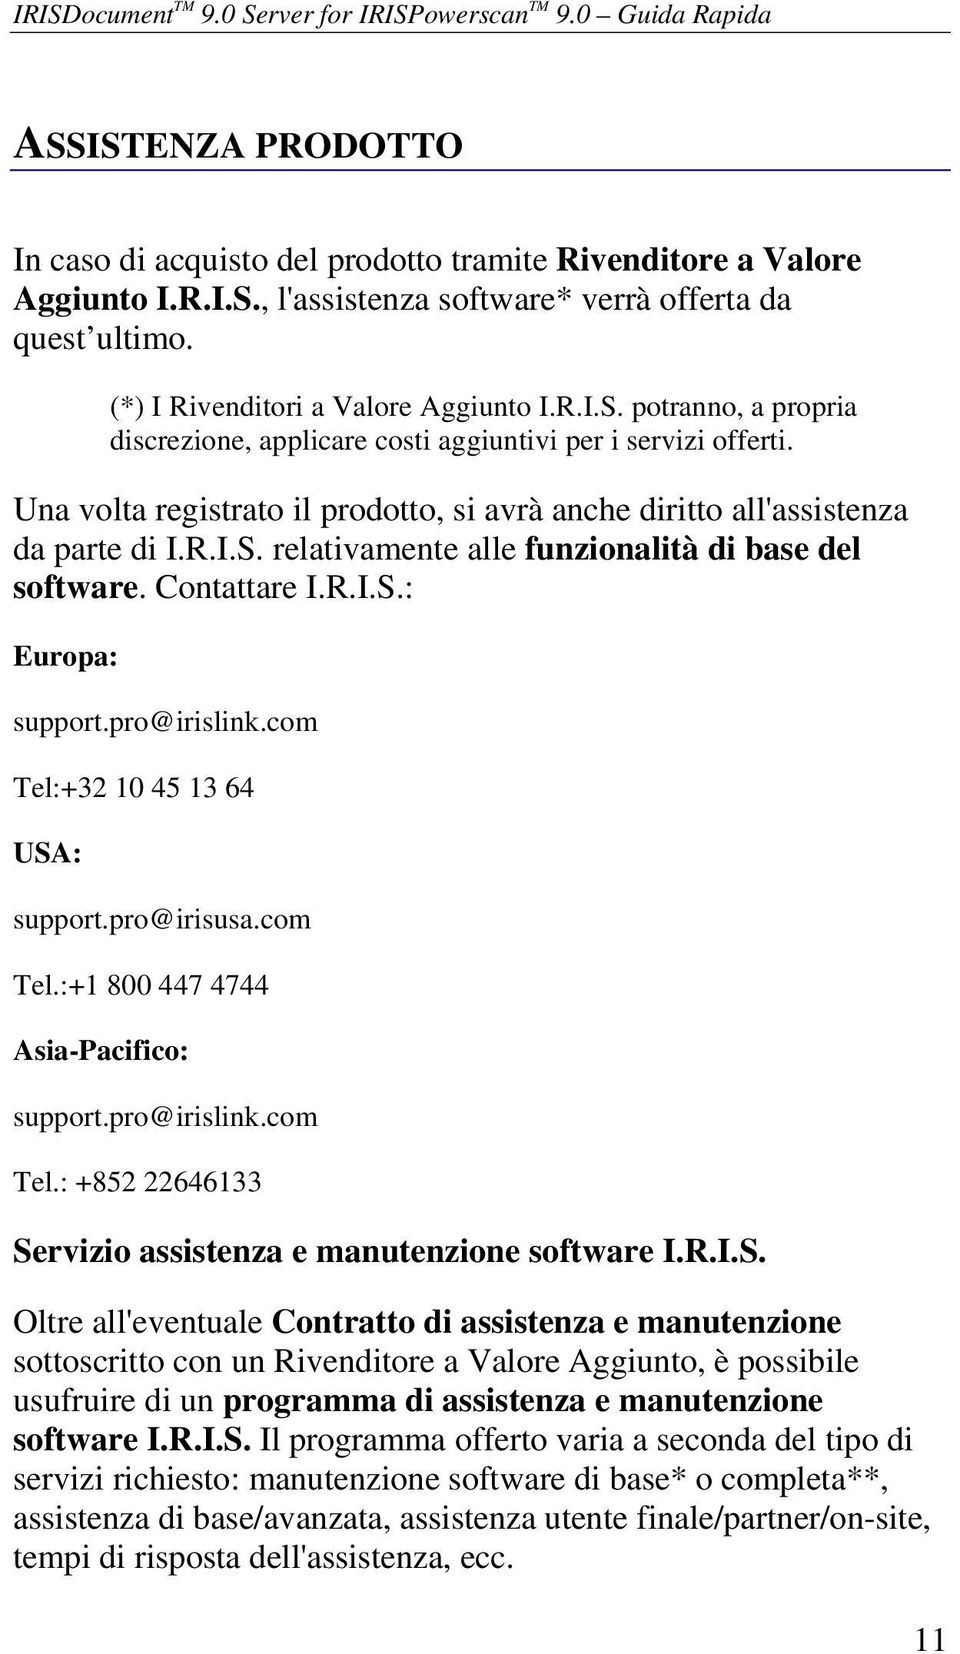 Una volta registrato il prodotto, si avrà anche diritto all'assistenza da parte di I.R.I.S. relativamente alle funzionalità di base del software. Contattare I.R.I.S.: Europa: support.pro@irislink.